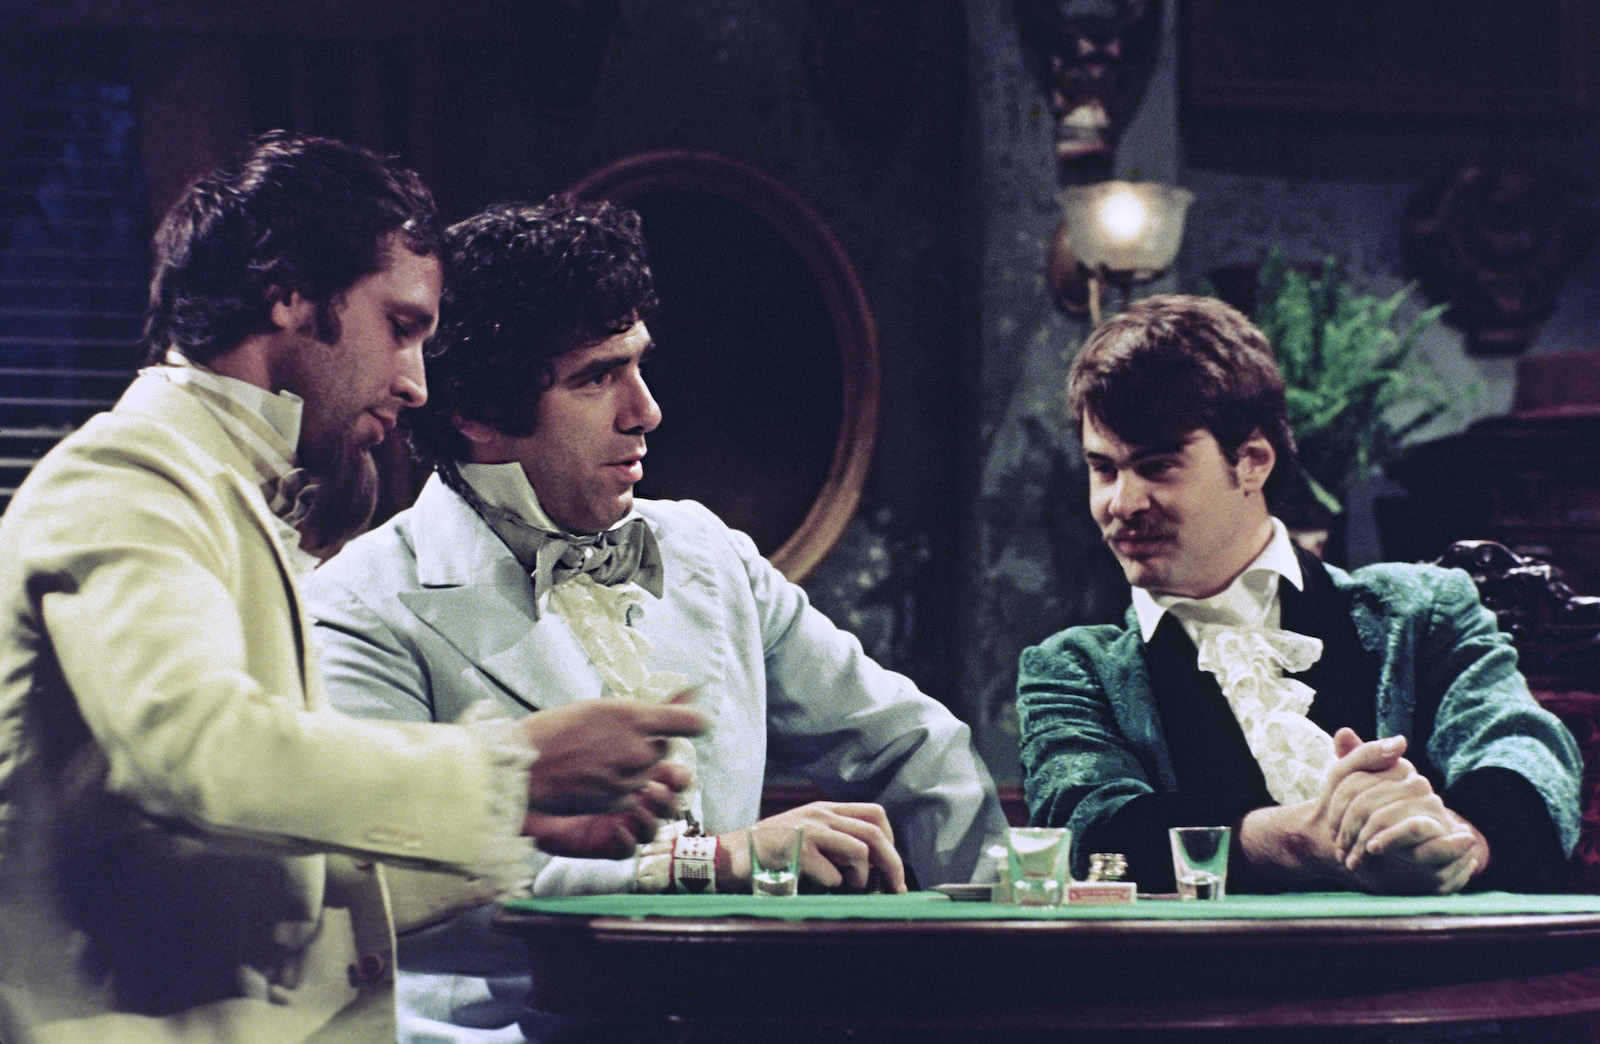 Chevy Chase, Elliott Gould, Dan Aykroyd play cards in an 'SNL' sketch